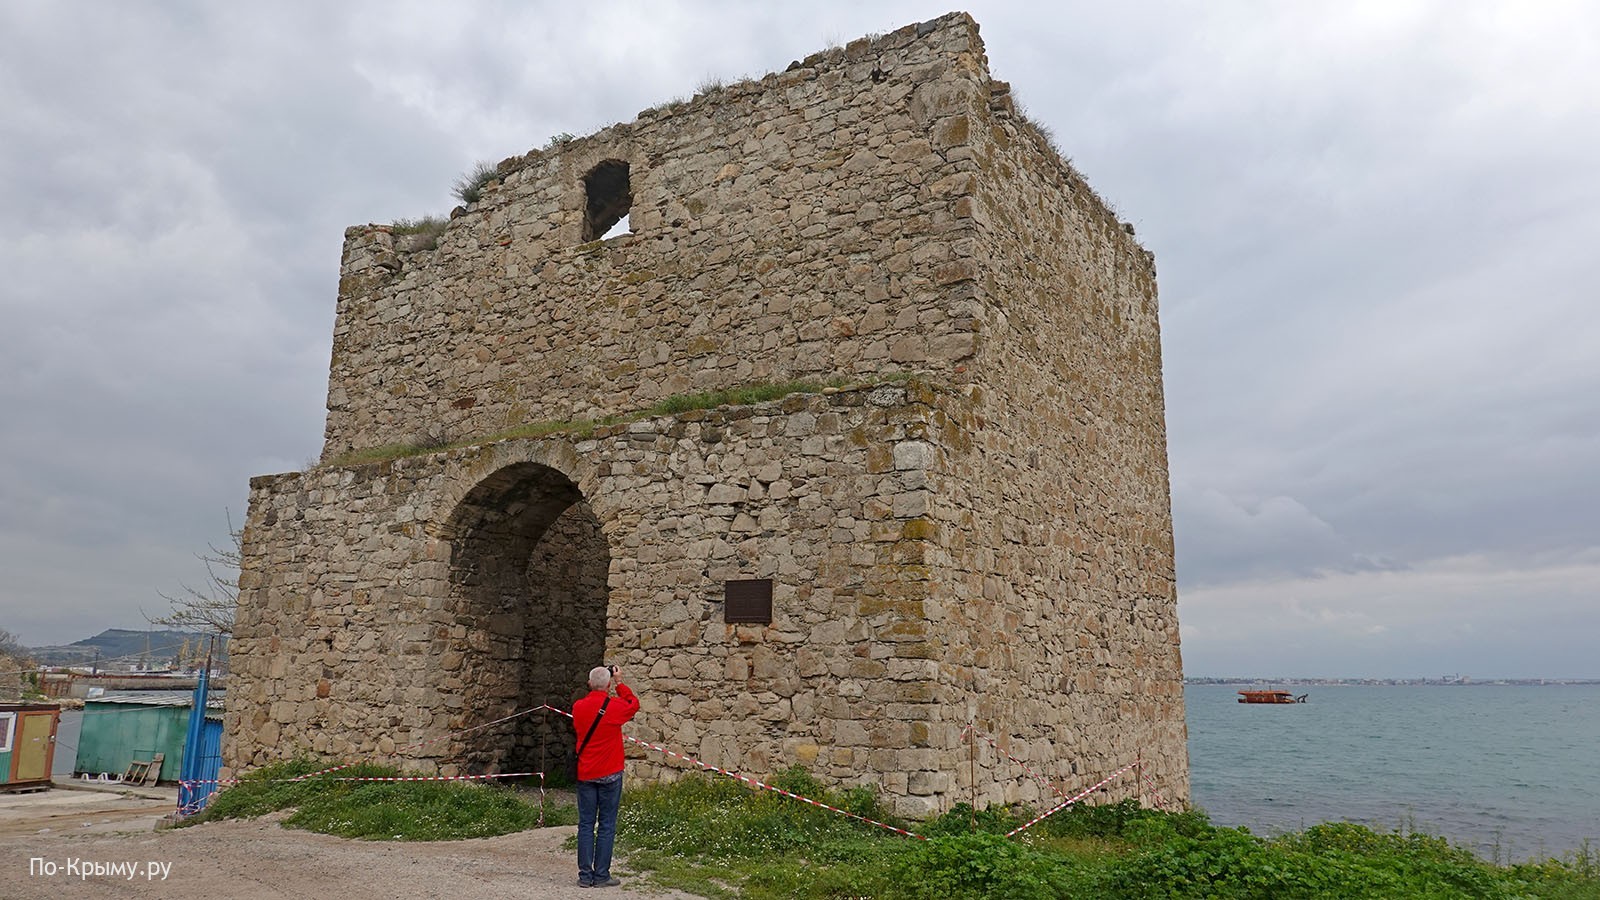 Доковая башня, генуэзская крепость Кафа в Феодосии, Крым